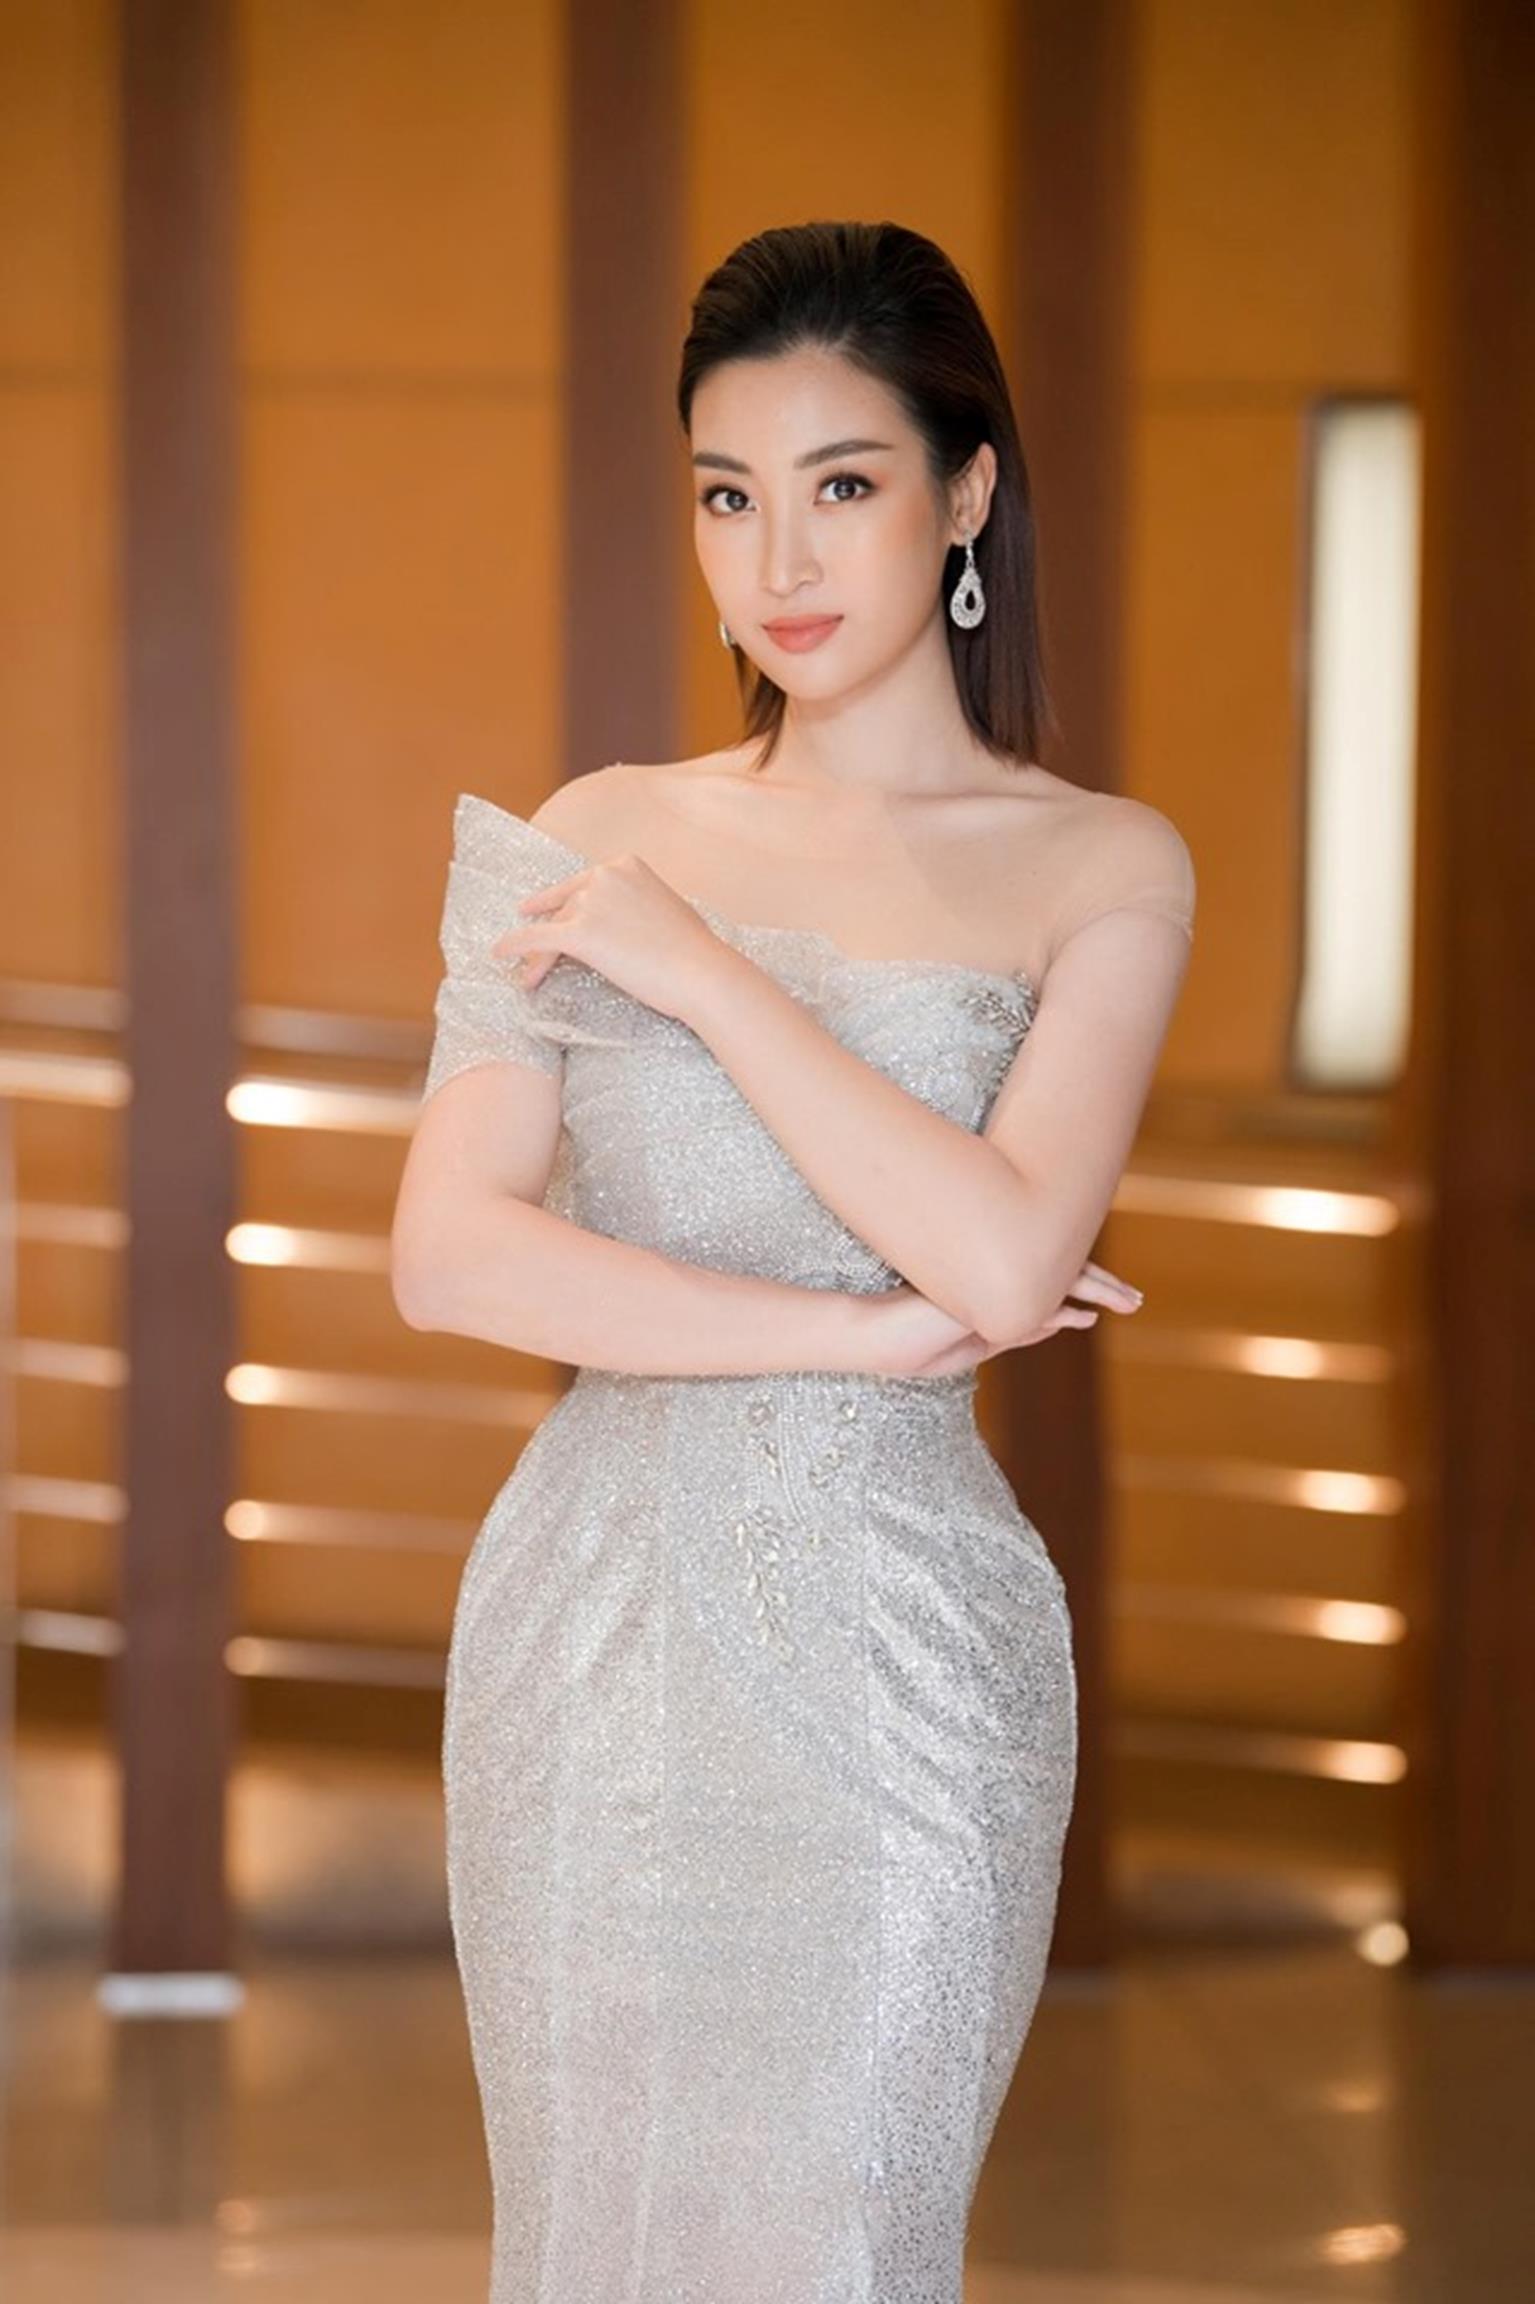 Hoa hậu Đỗ Mỹ Linh mặc đẹp tựa nữ thần, phớt lờ ồn ào bủa vây?-2